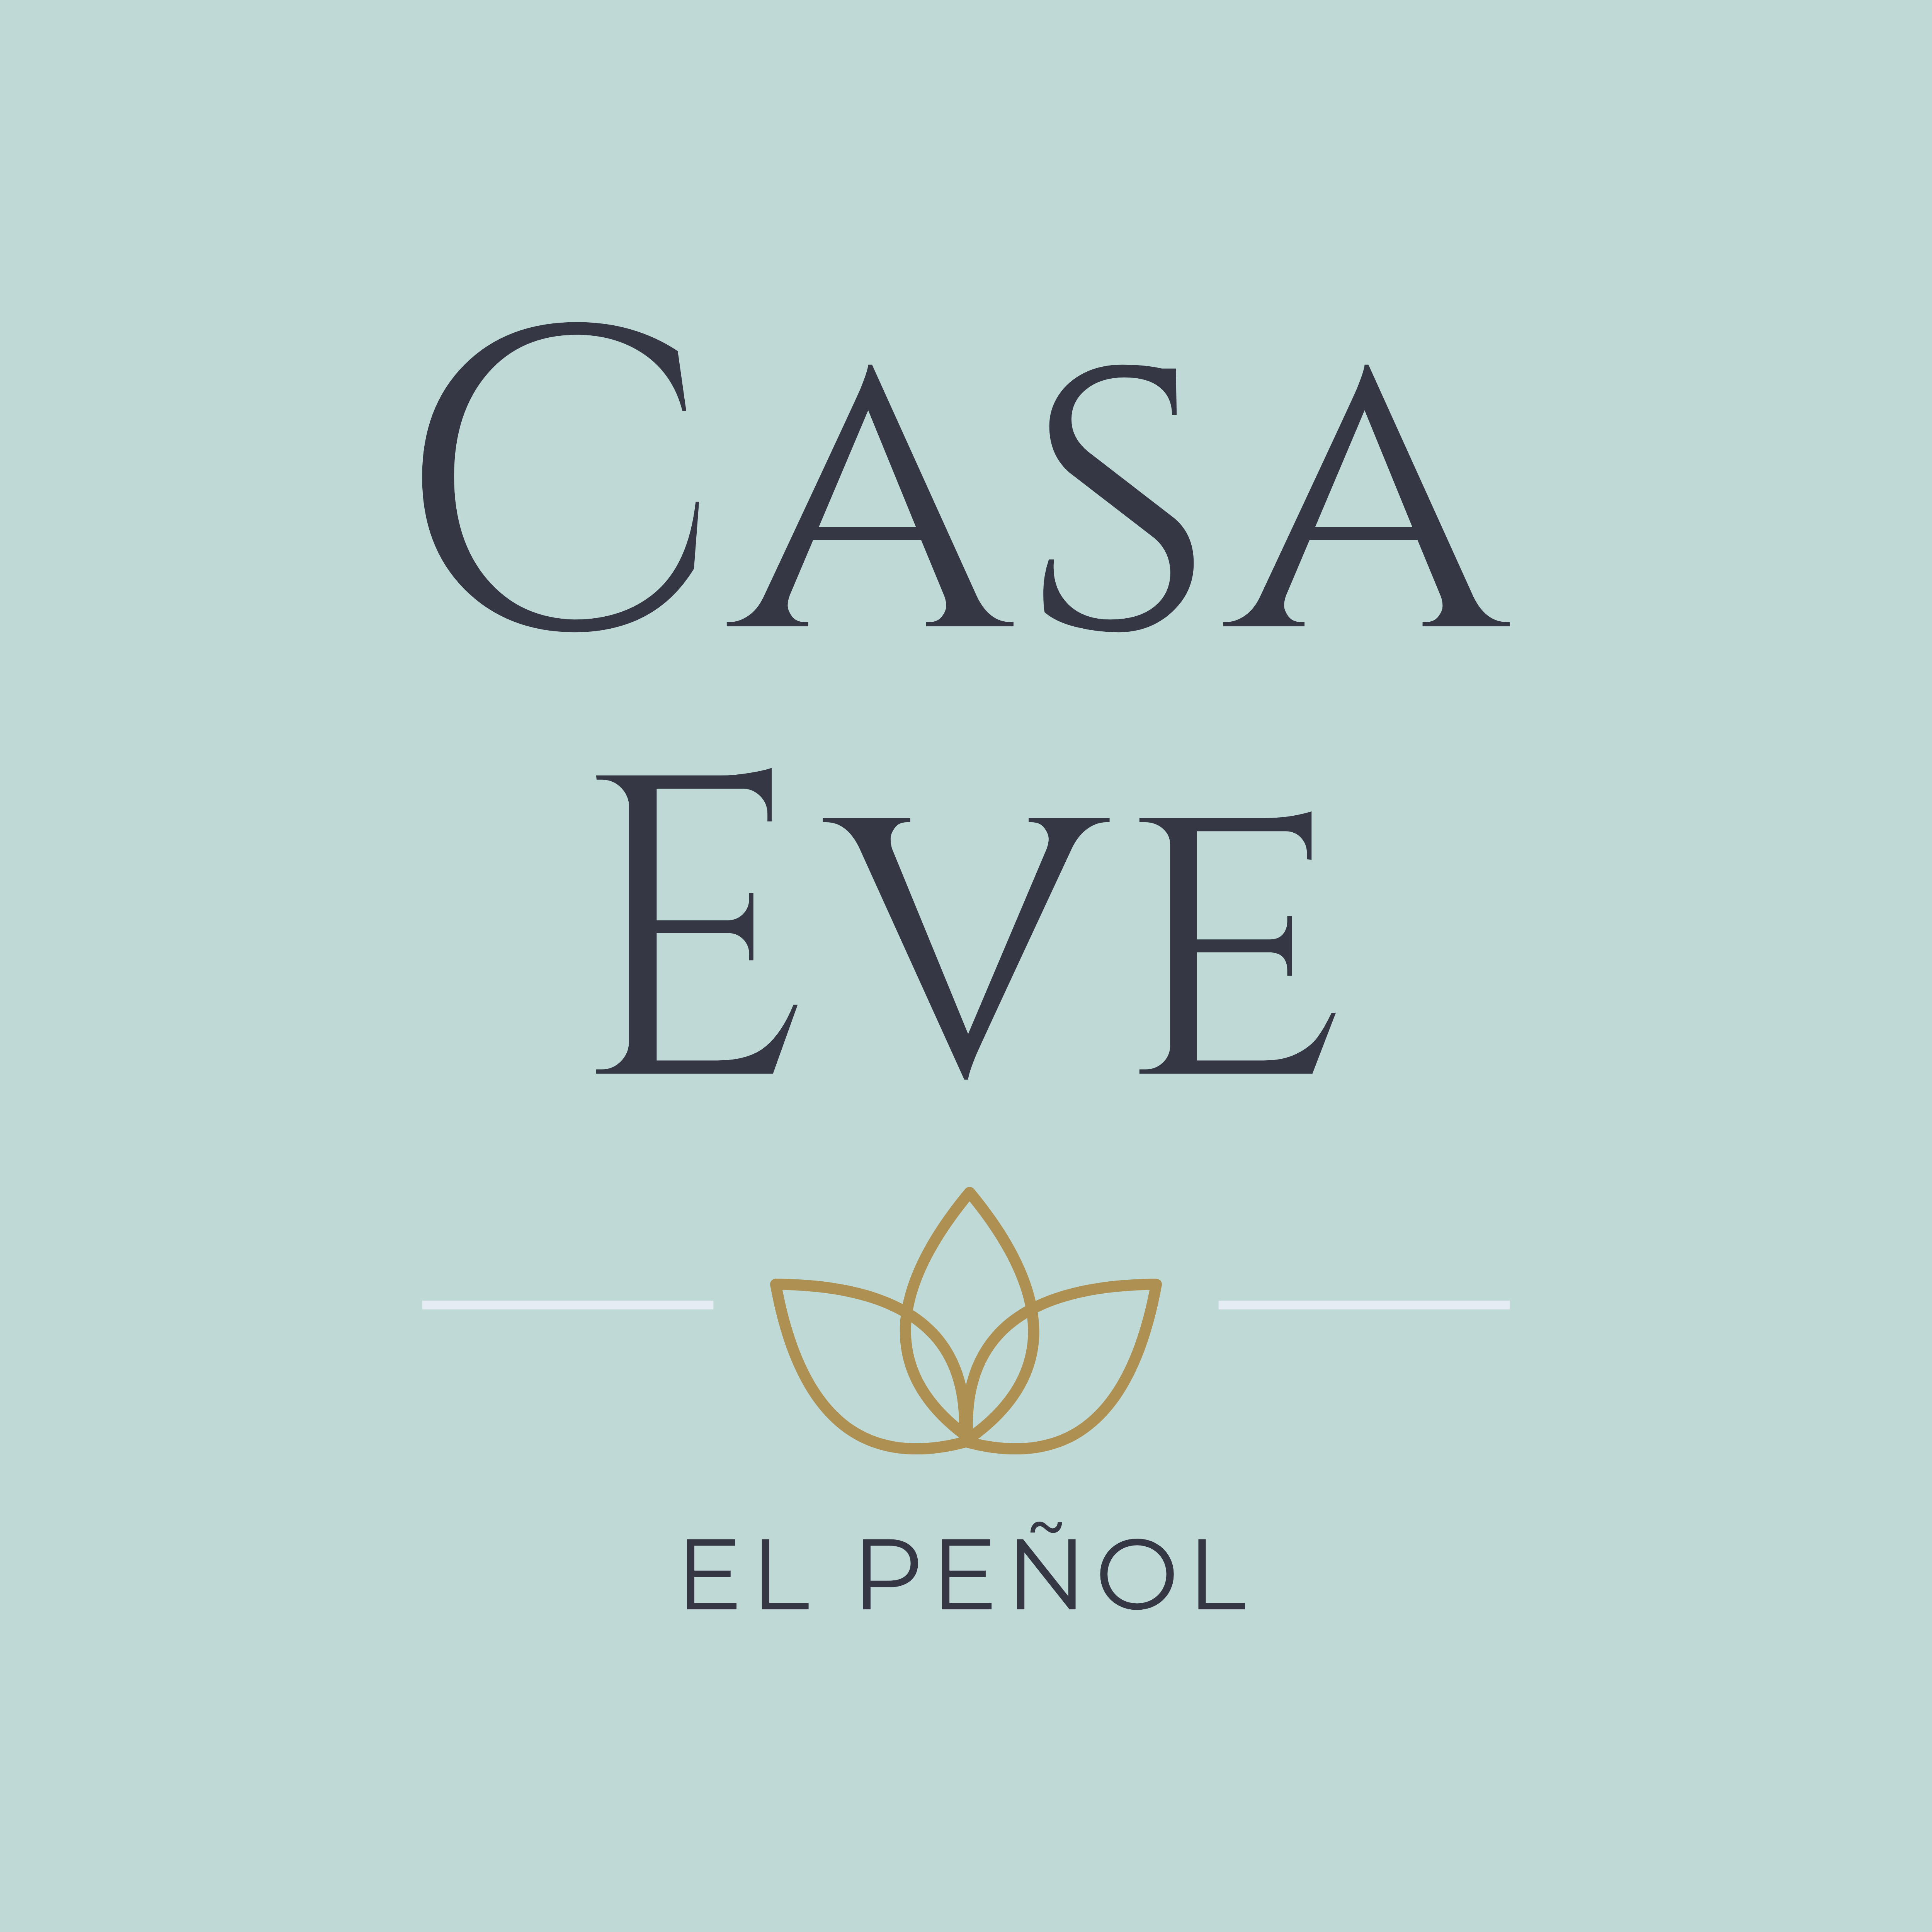 Casa Eve Vacation Rental in Colombia | CasaEve.com | Homes, Villas, Suites, Amenities in Colombia | LOGO